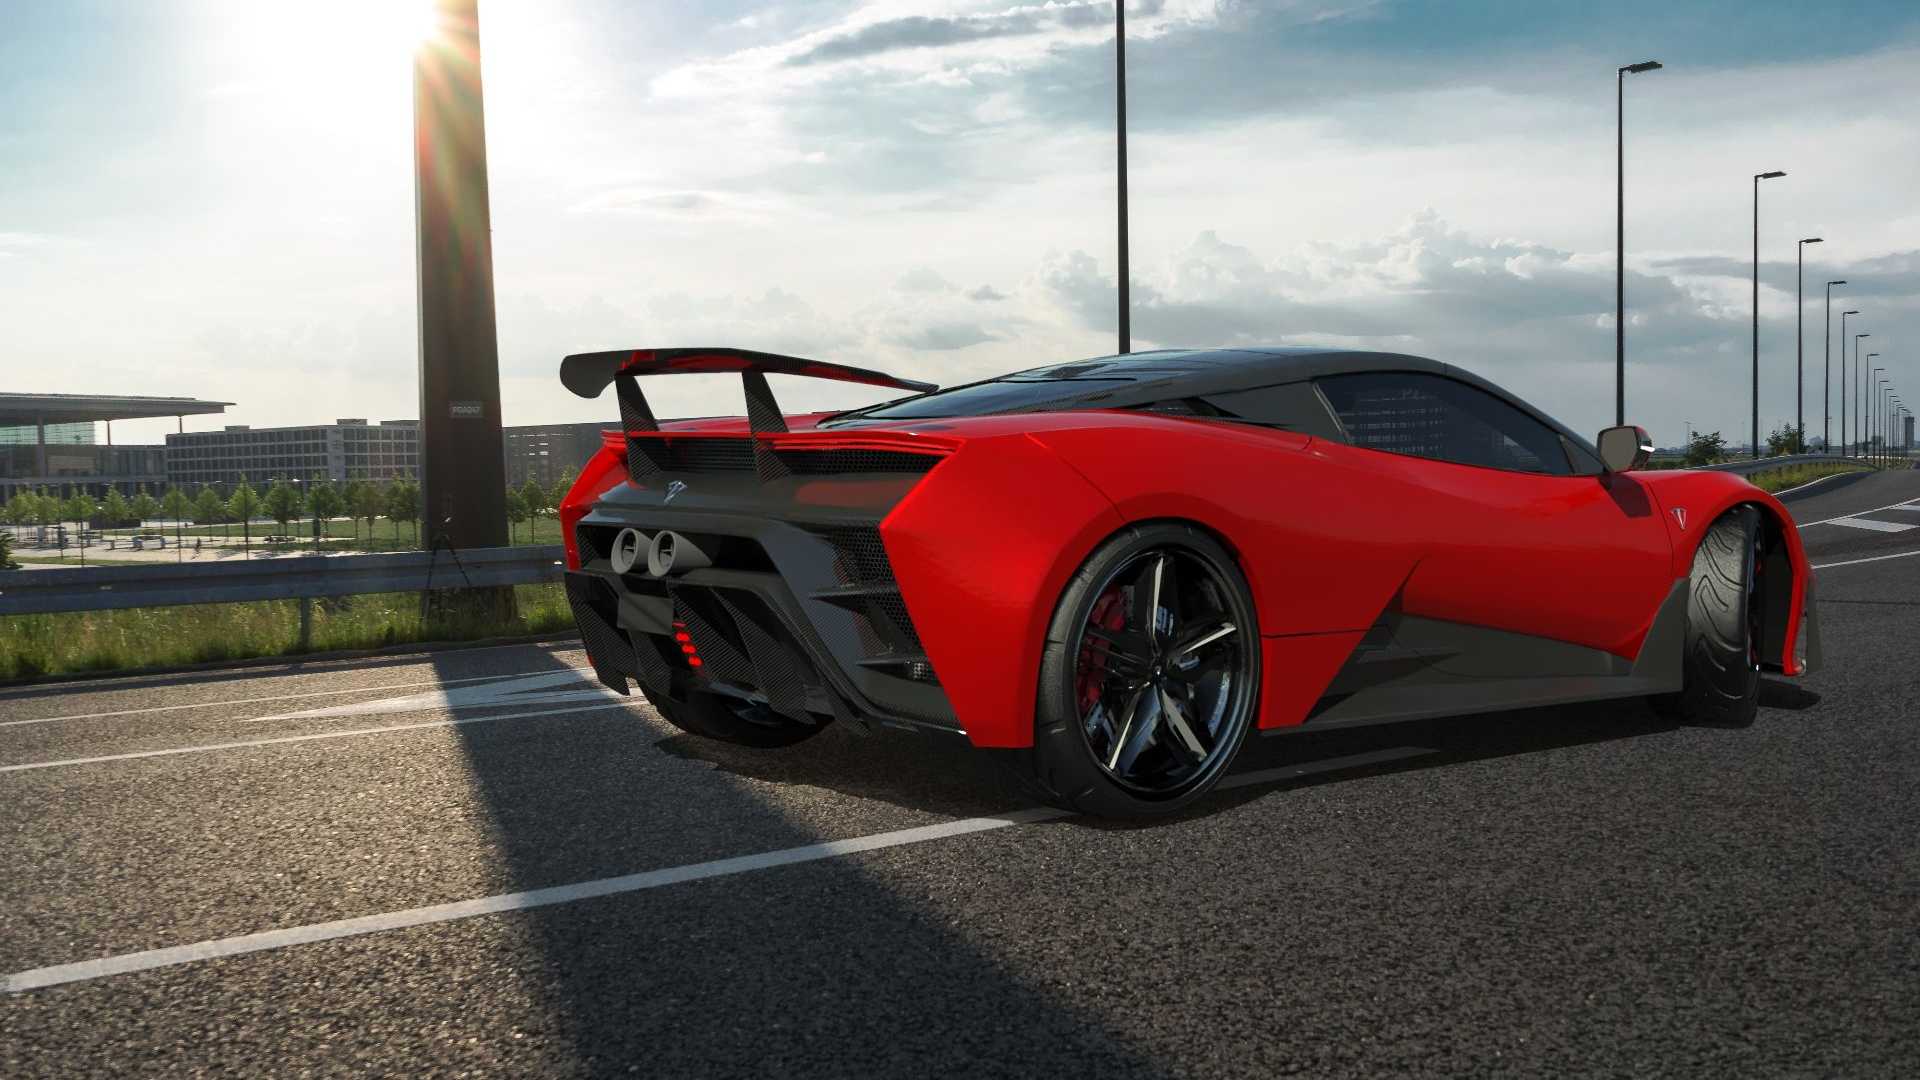  Projektohet supermakina e parë shqiptare – Rivale e Lamborghini dhe Ferrari